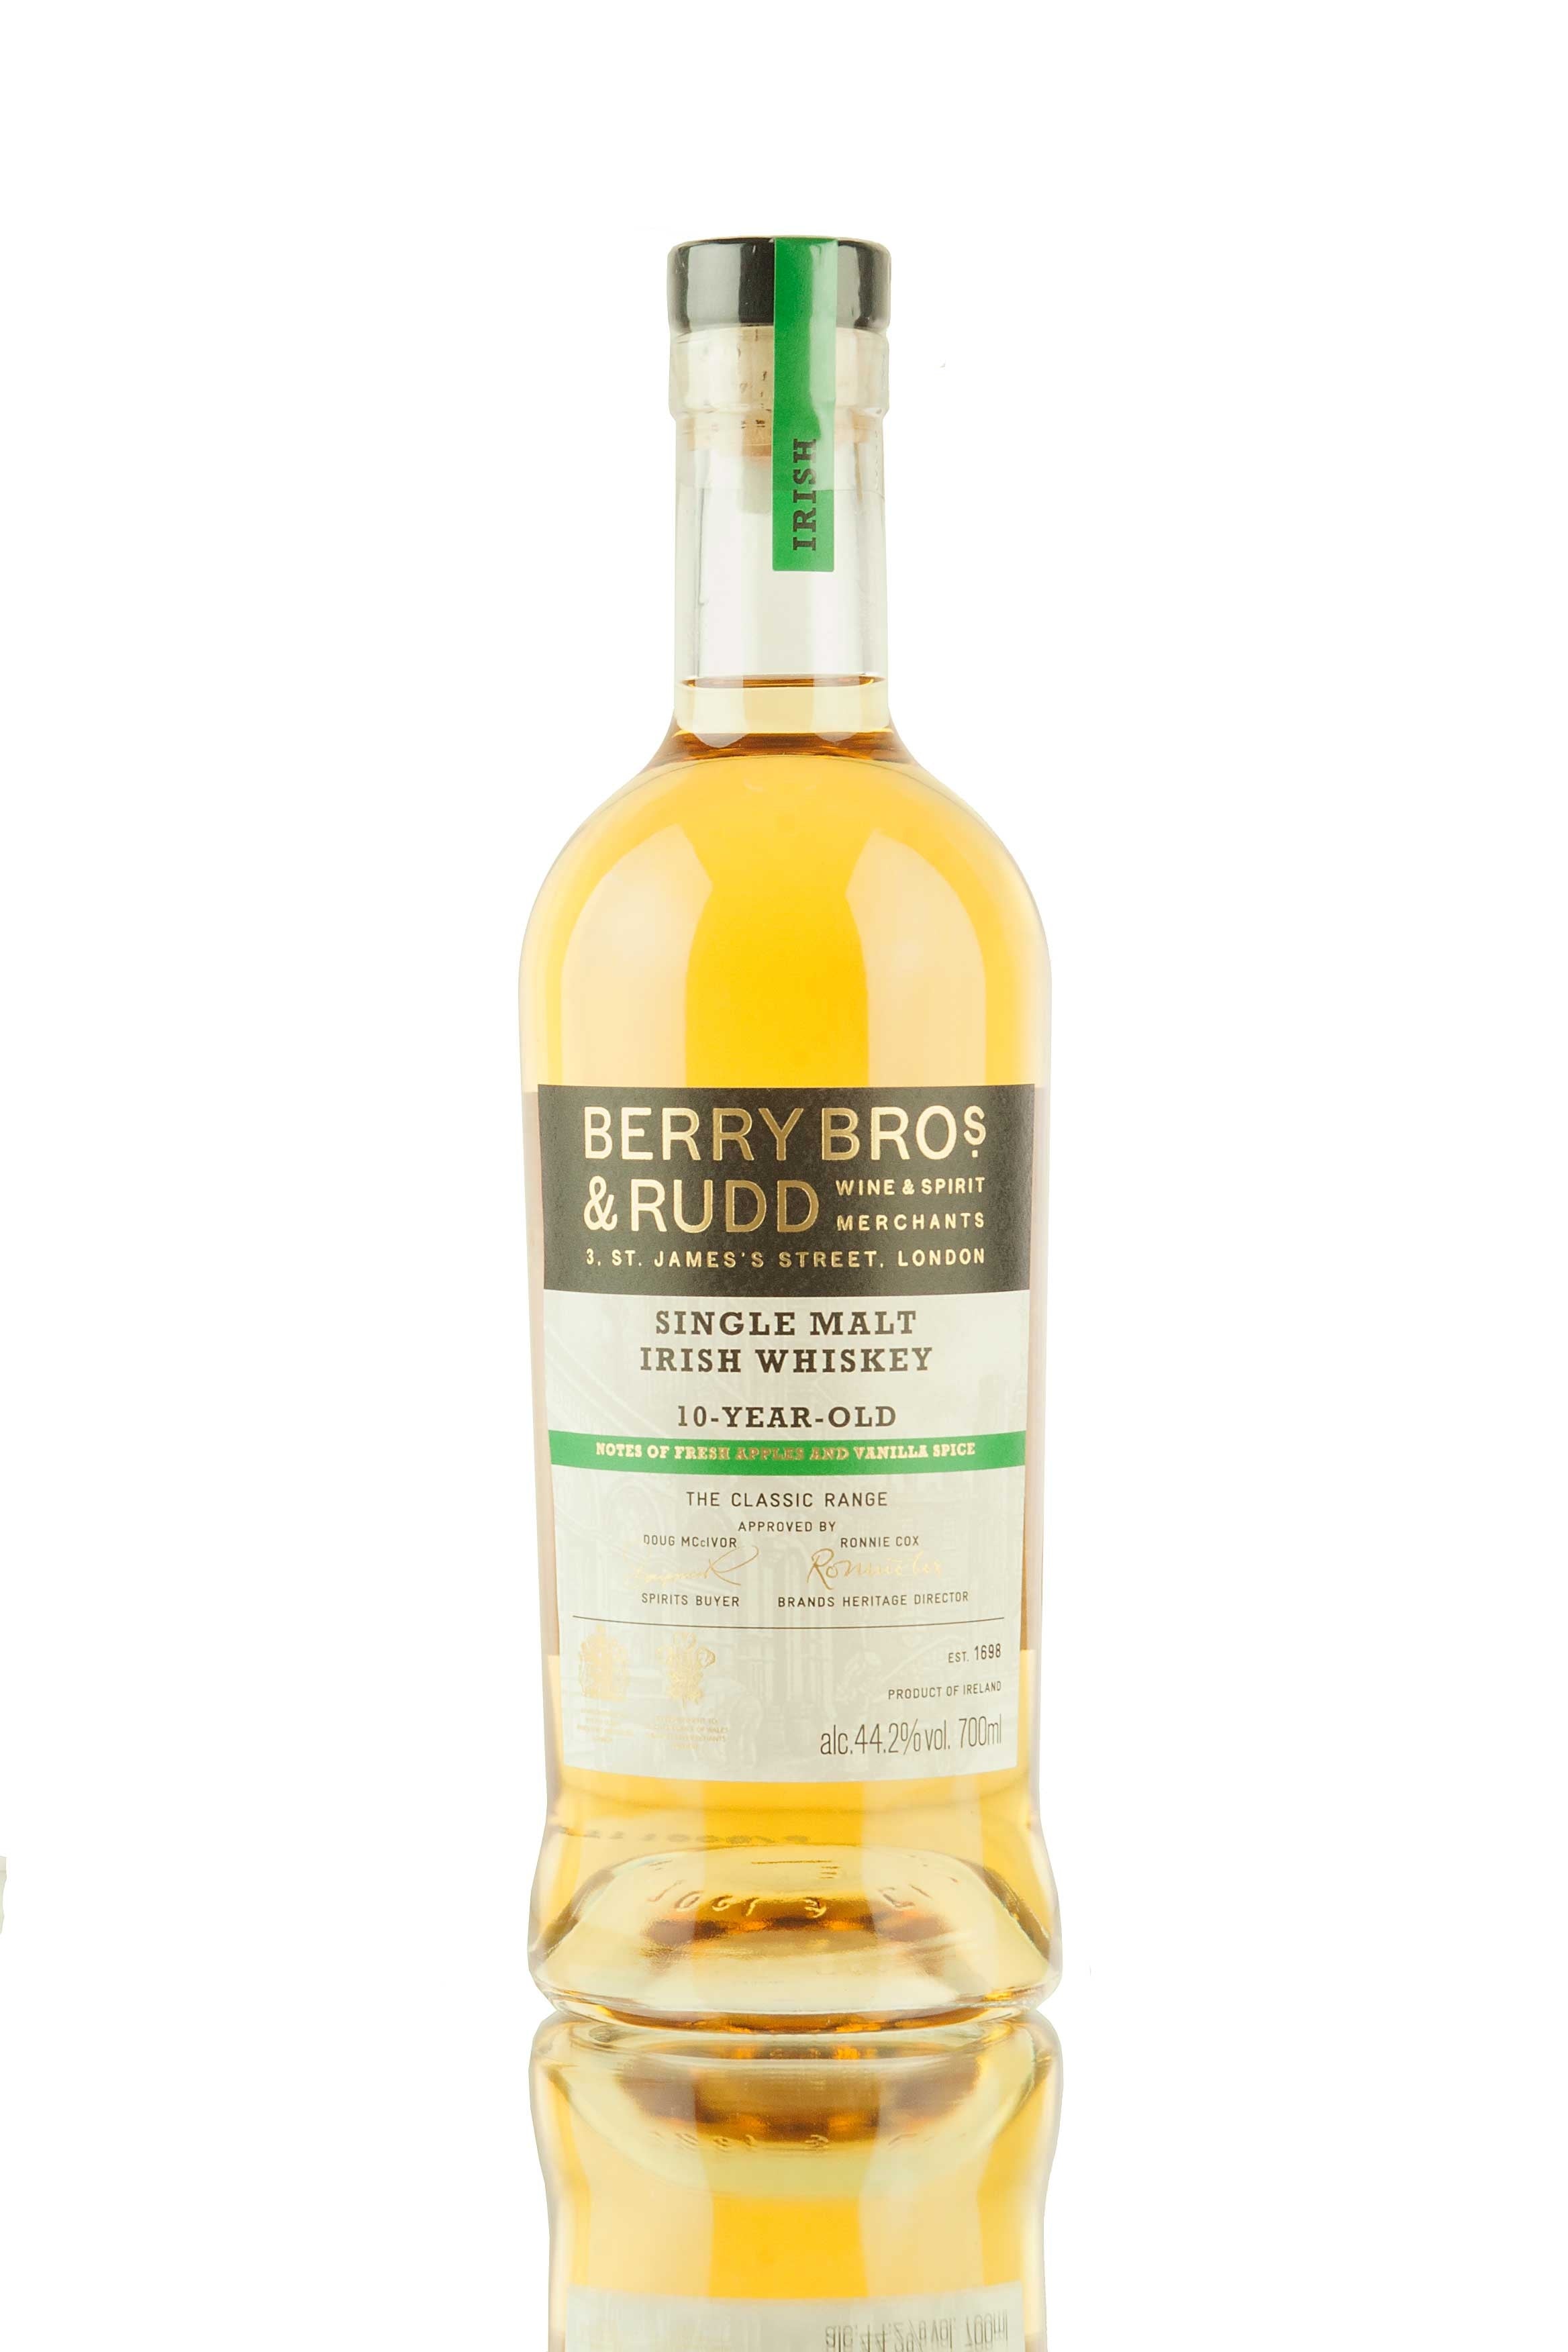 Berry Bros & Rudd The Classic Range Irish Whiskey